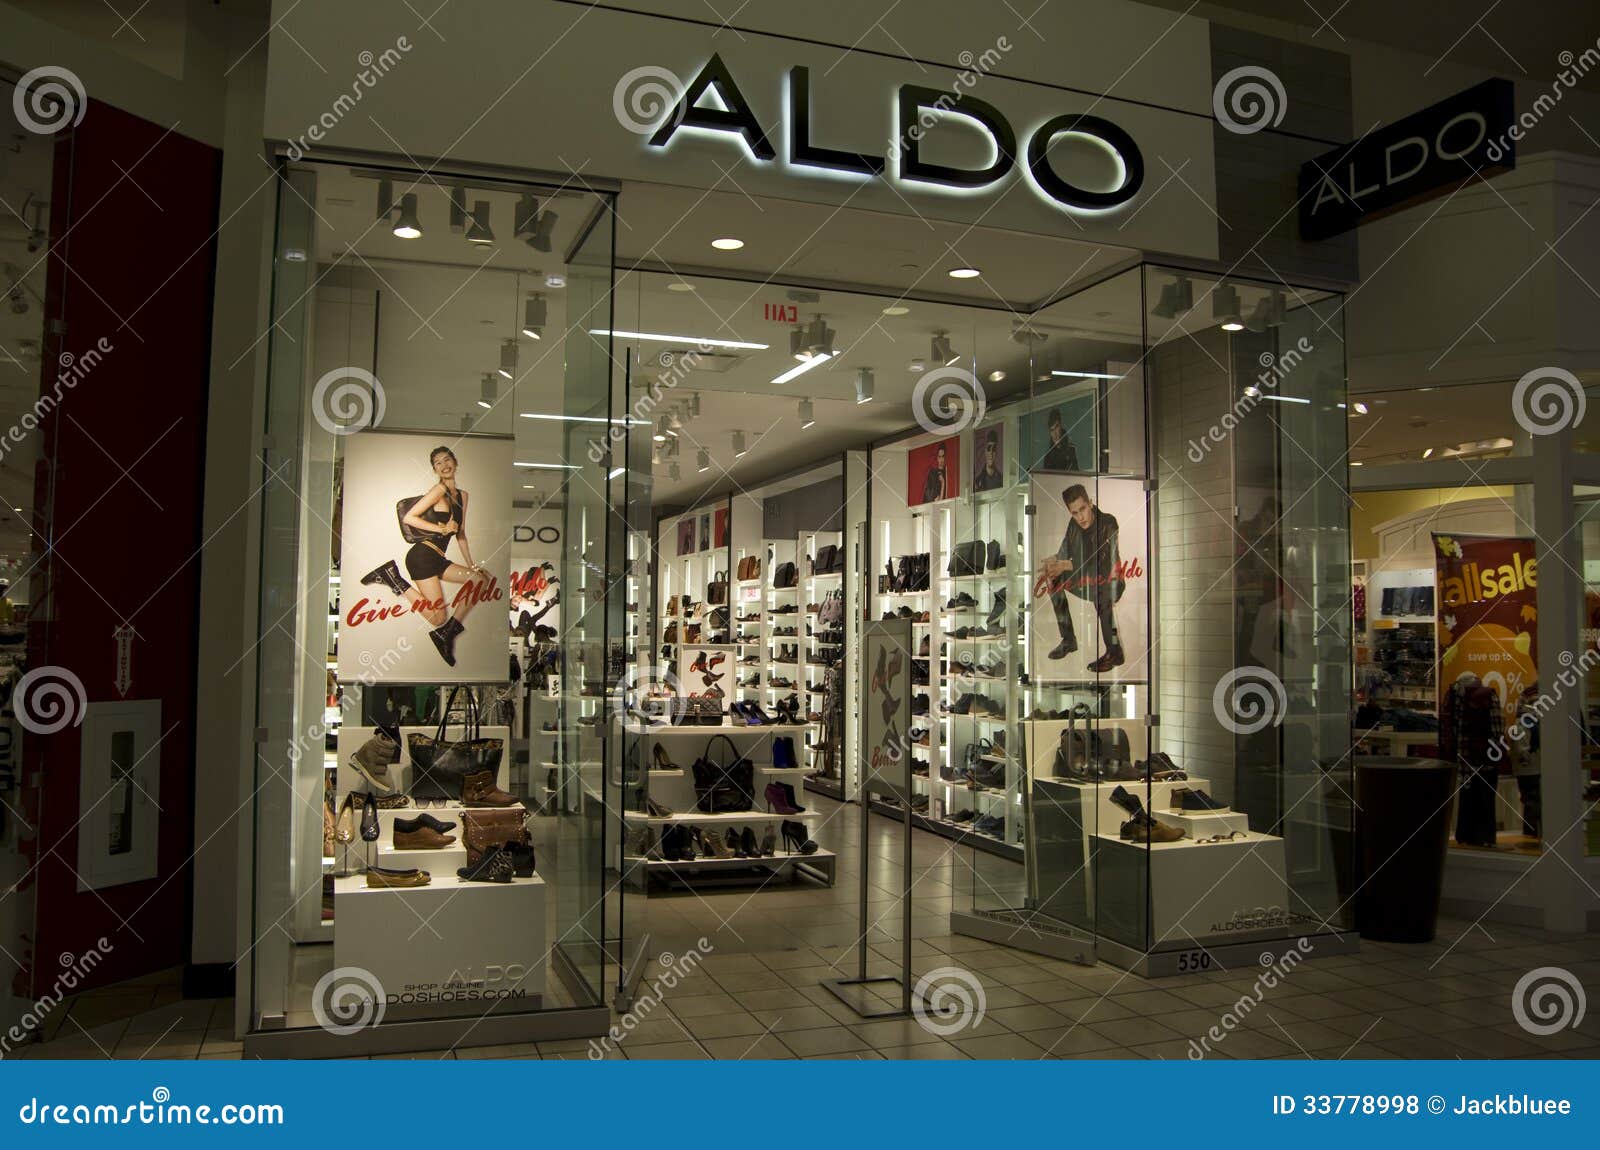 An Aldo Shoe store selling stylish shoe in Alderwood Mall Seattle.